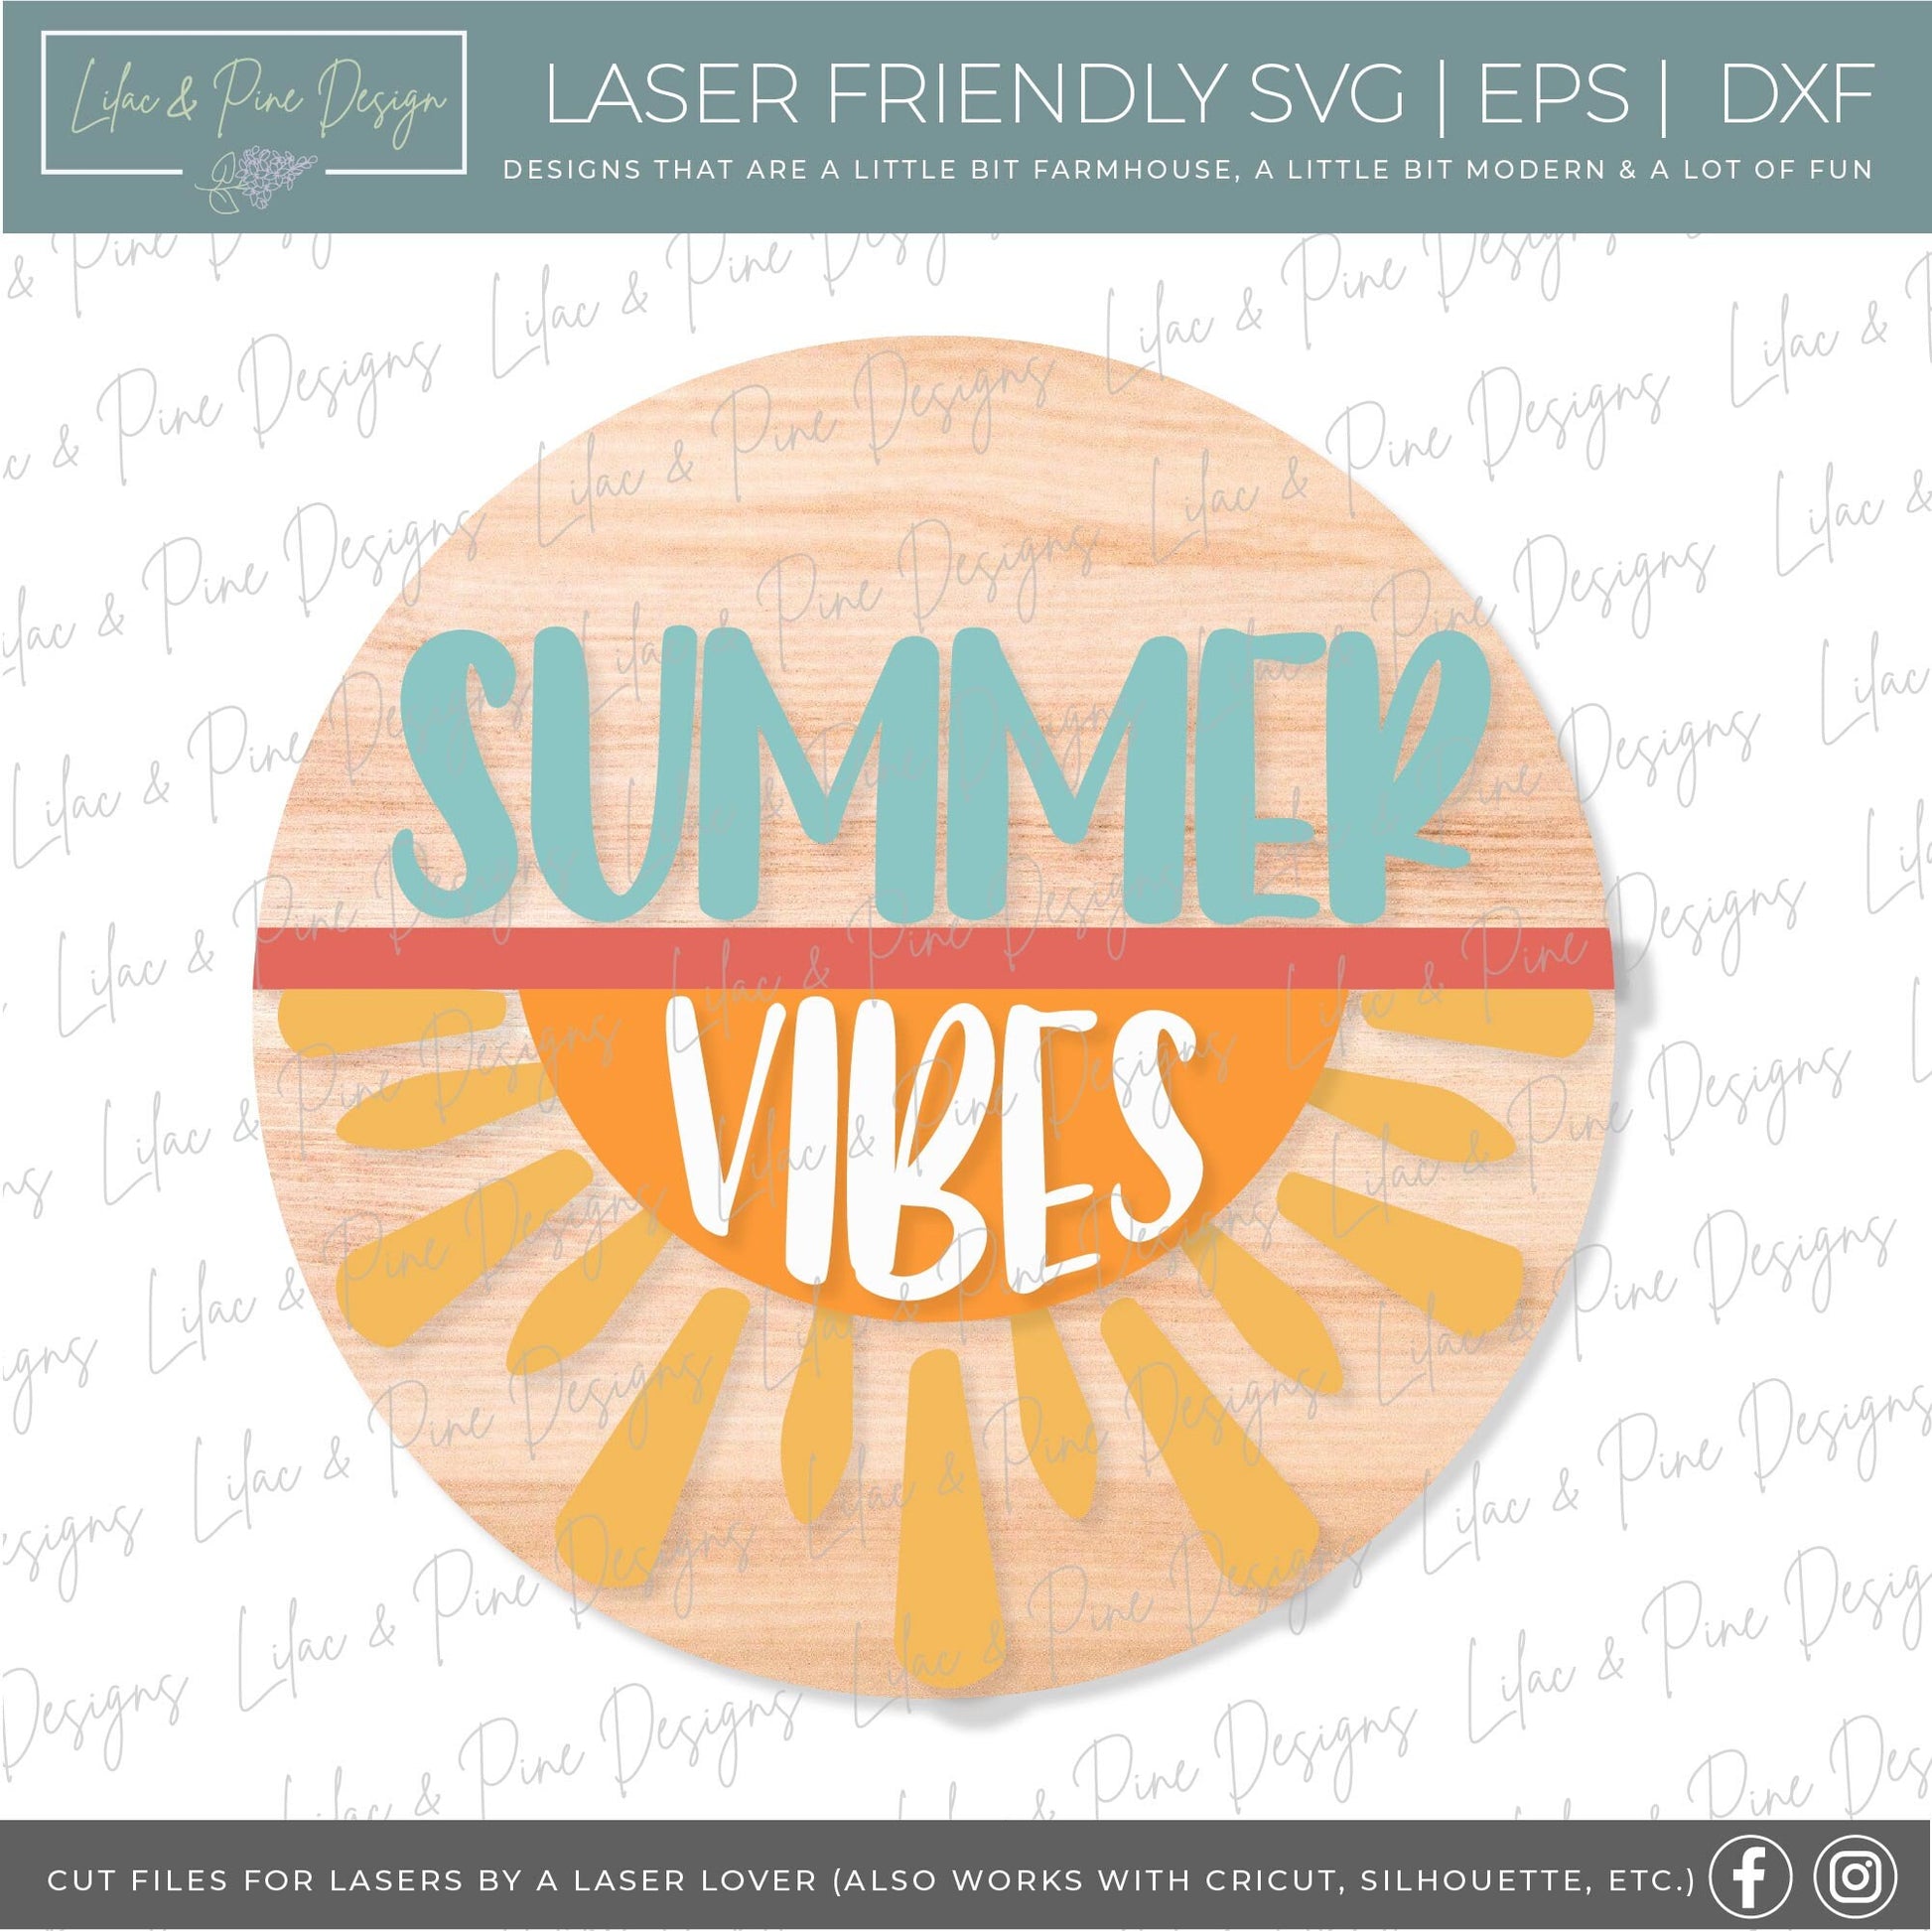 Summer welcome sign bundle, door hanger SVG bundle, sunshine SVG, boho svg, sunflower svg, summer svg, Glowforge files, laser cut file